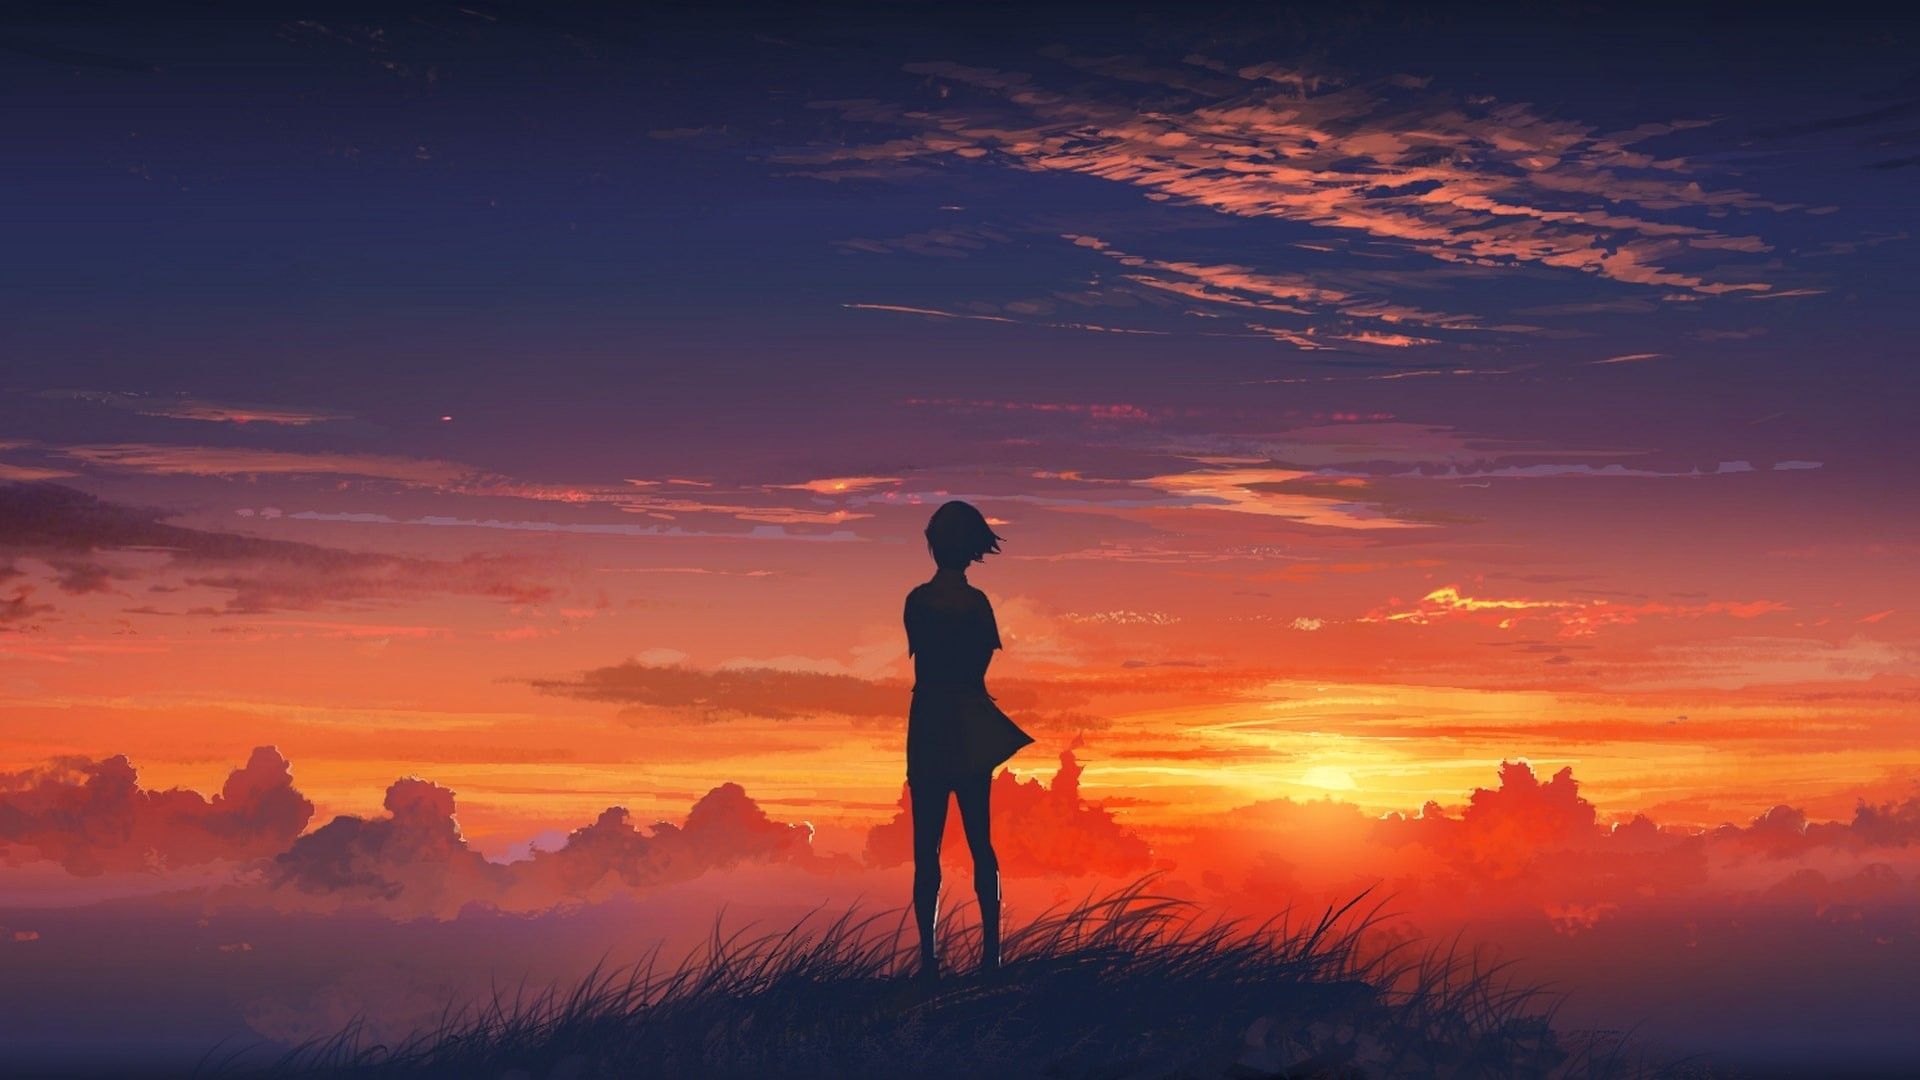 Cảm nhận những khoảnh khắc lãng mạn và đầy màu sắc của hoàng hôn với bộ ảnh hình nền anime sunset wallpapers anime đầy nghệ thuật. Theo dõi những nhân vật yêu thích trong những cảnh quan thiên nhiên đẹp như tranh vẽ để tốt cho tâm hồn bạn.